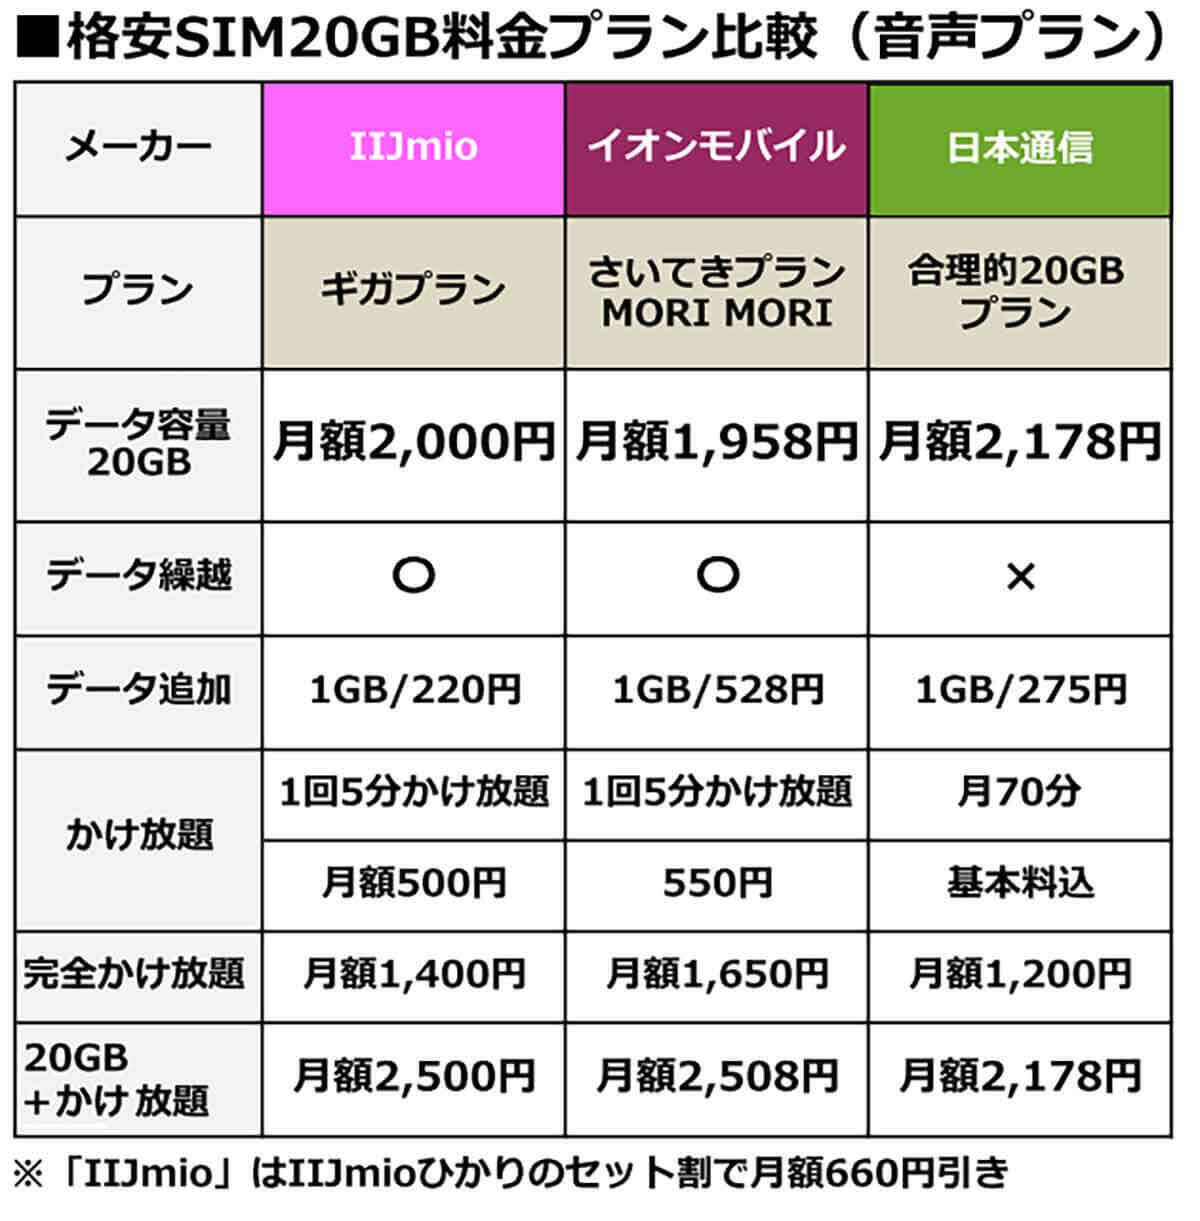 月20GBで選ぶ格安SIMランキング【2022年4月最新版】